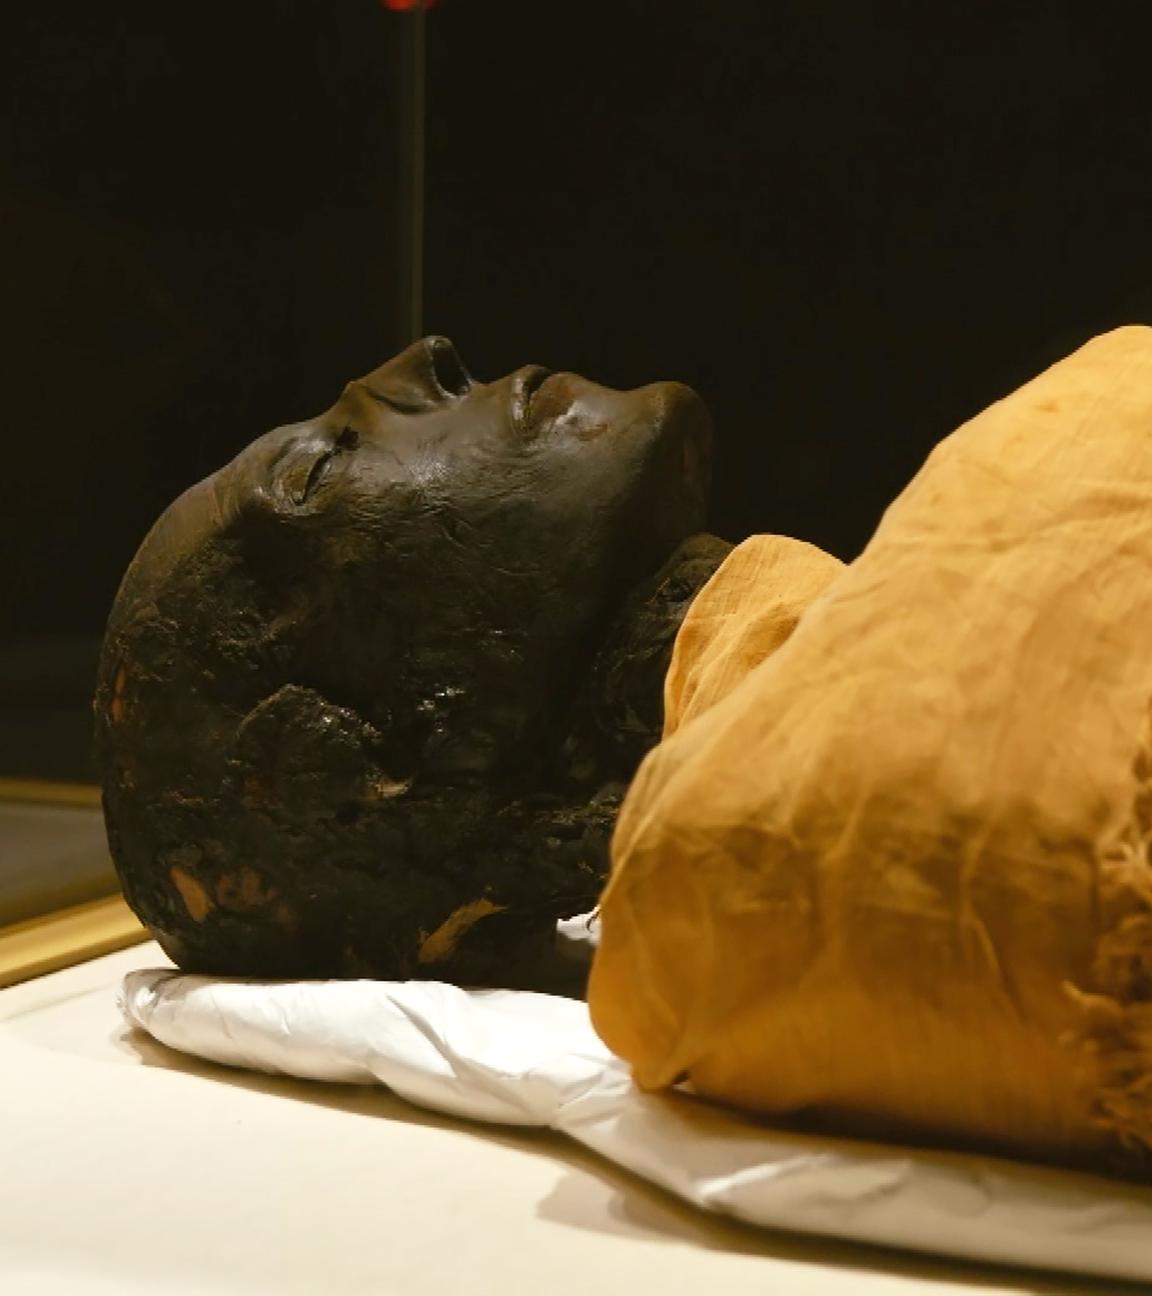 EIne Mumie liegt auf einem hellen Untergrund. Der Kopf ist ausgewickelt, schwarz und sehr gut erhalten. Die geschlossenen Augen, die Nase und die Lippen treten deutlich hervor. Vom Hals abwärts ist der Körper durch ein beige-braunes Leinen verdeckt.